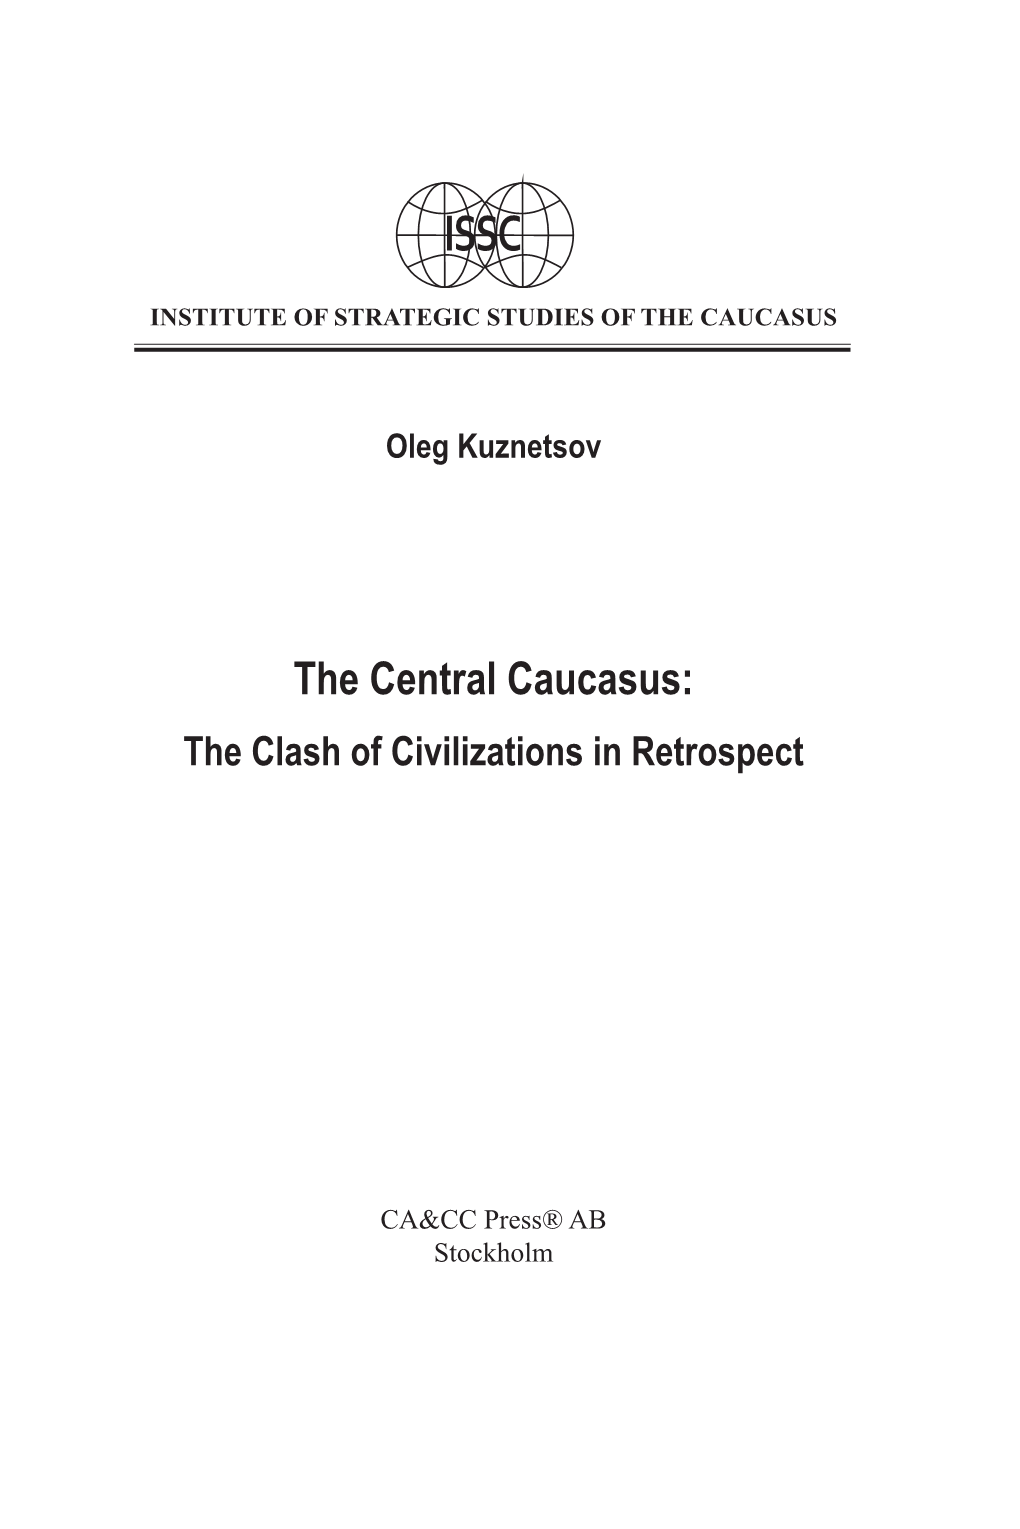 The Central Caucasus: the Clash of Civilizations in Retrospect